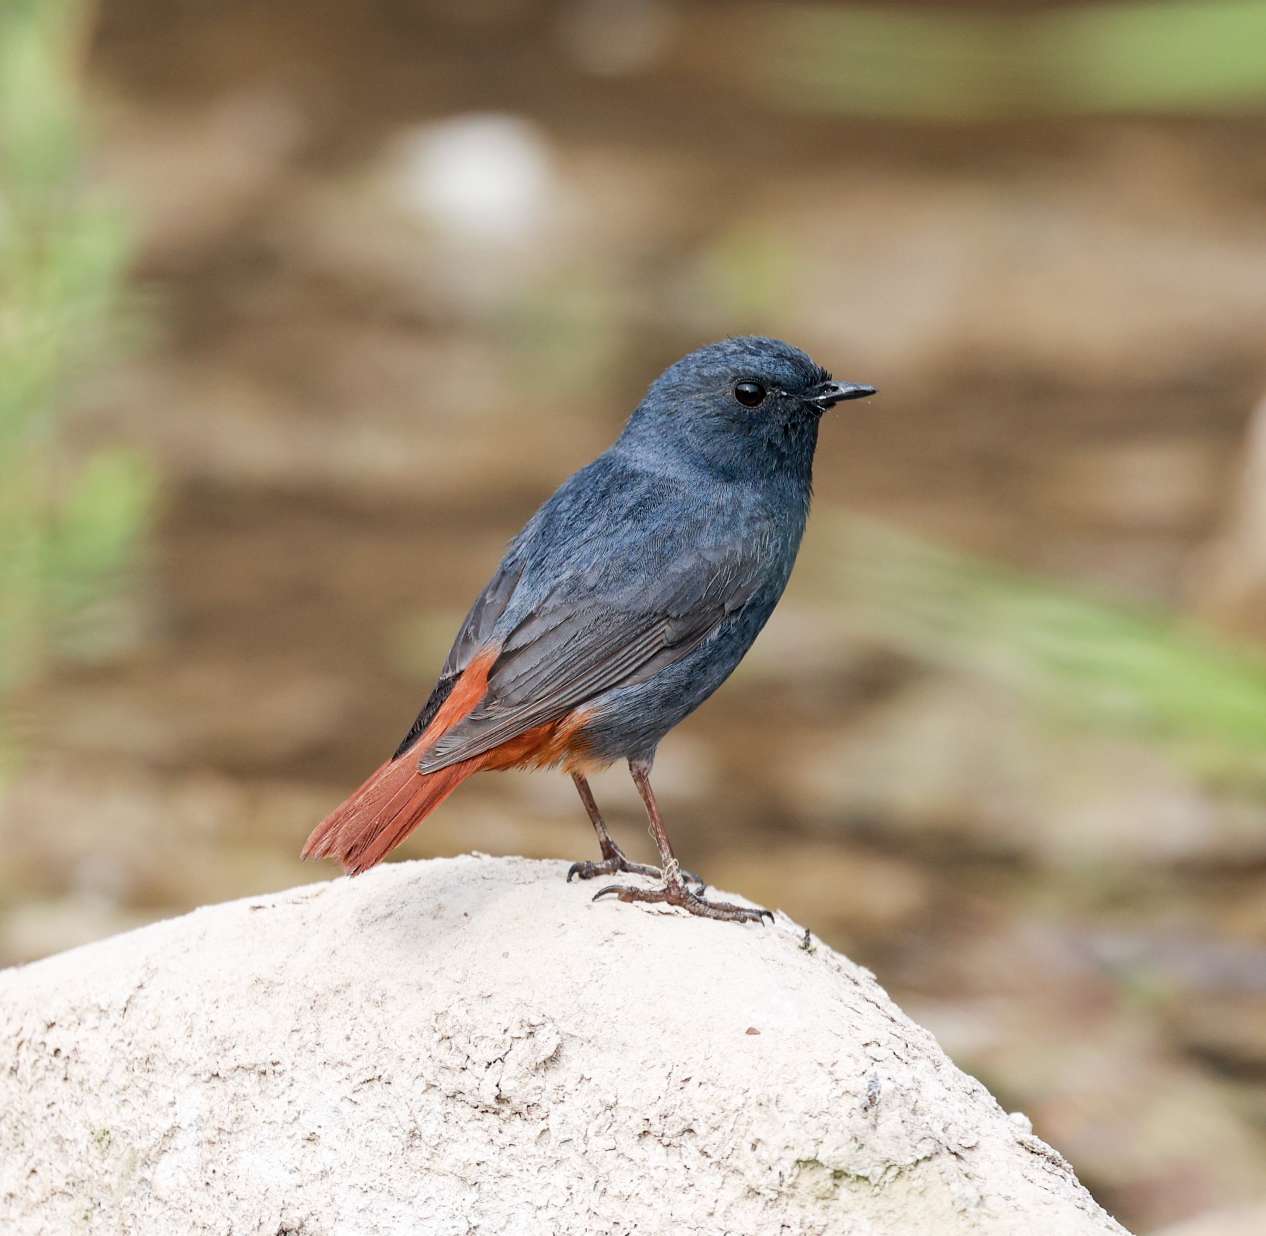 红尾水鸲,钴蓝色的雄鸟有着一条褐红色的尾巴,这也是红尾水鸲名字的